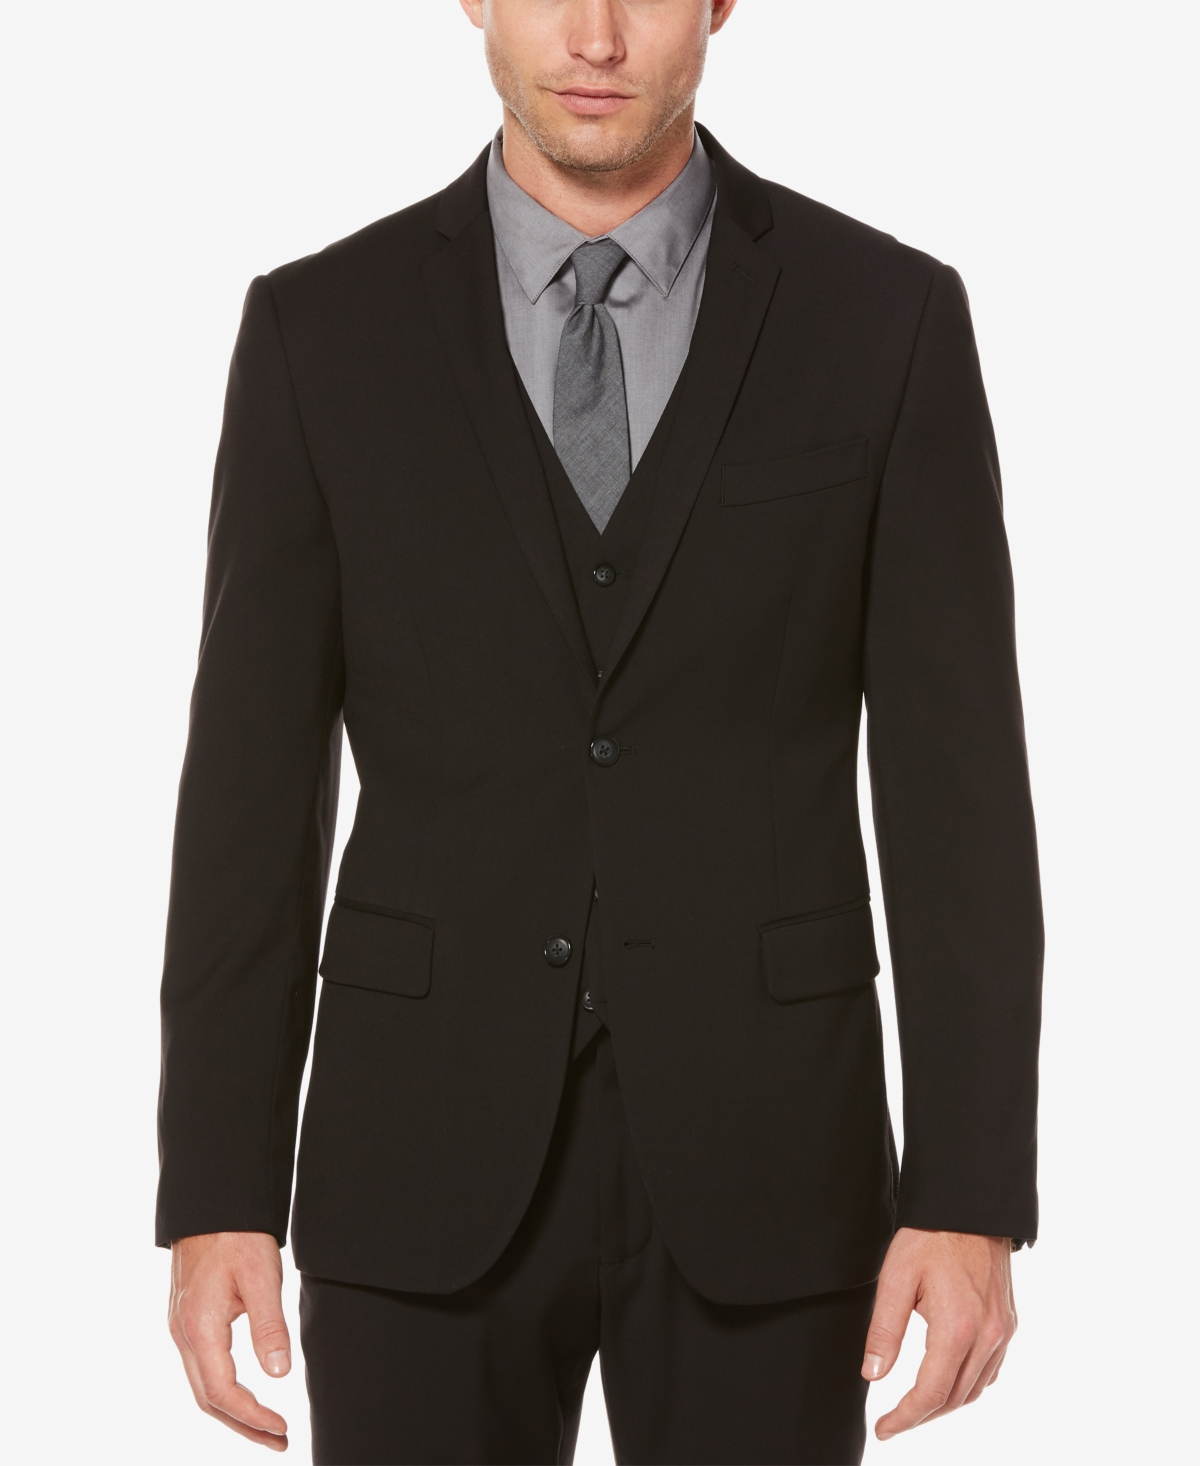 Men's Slim-Fit Suit Jacket - Charcoal